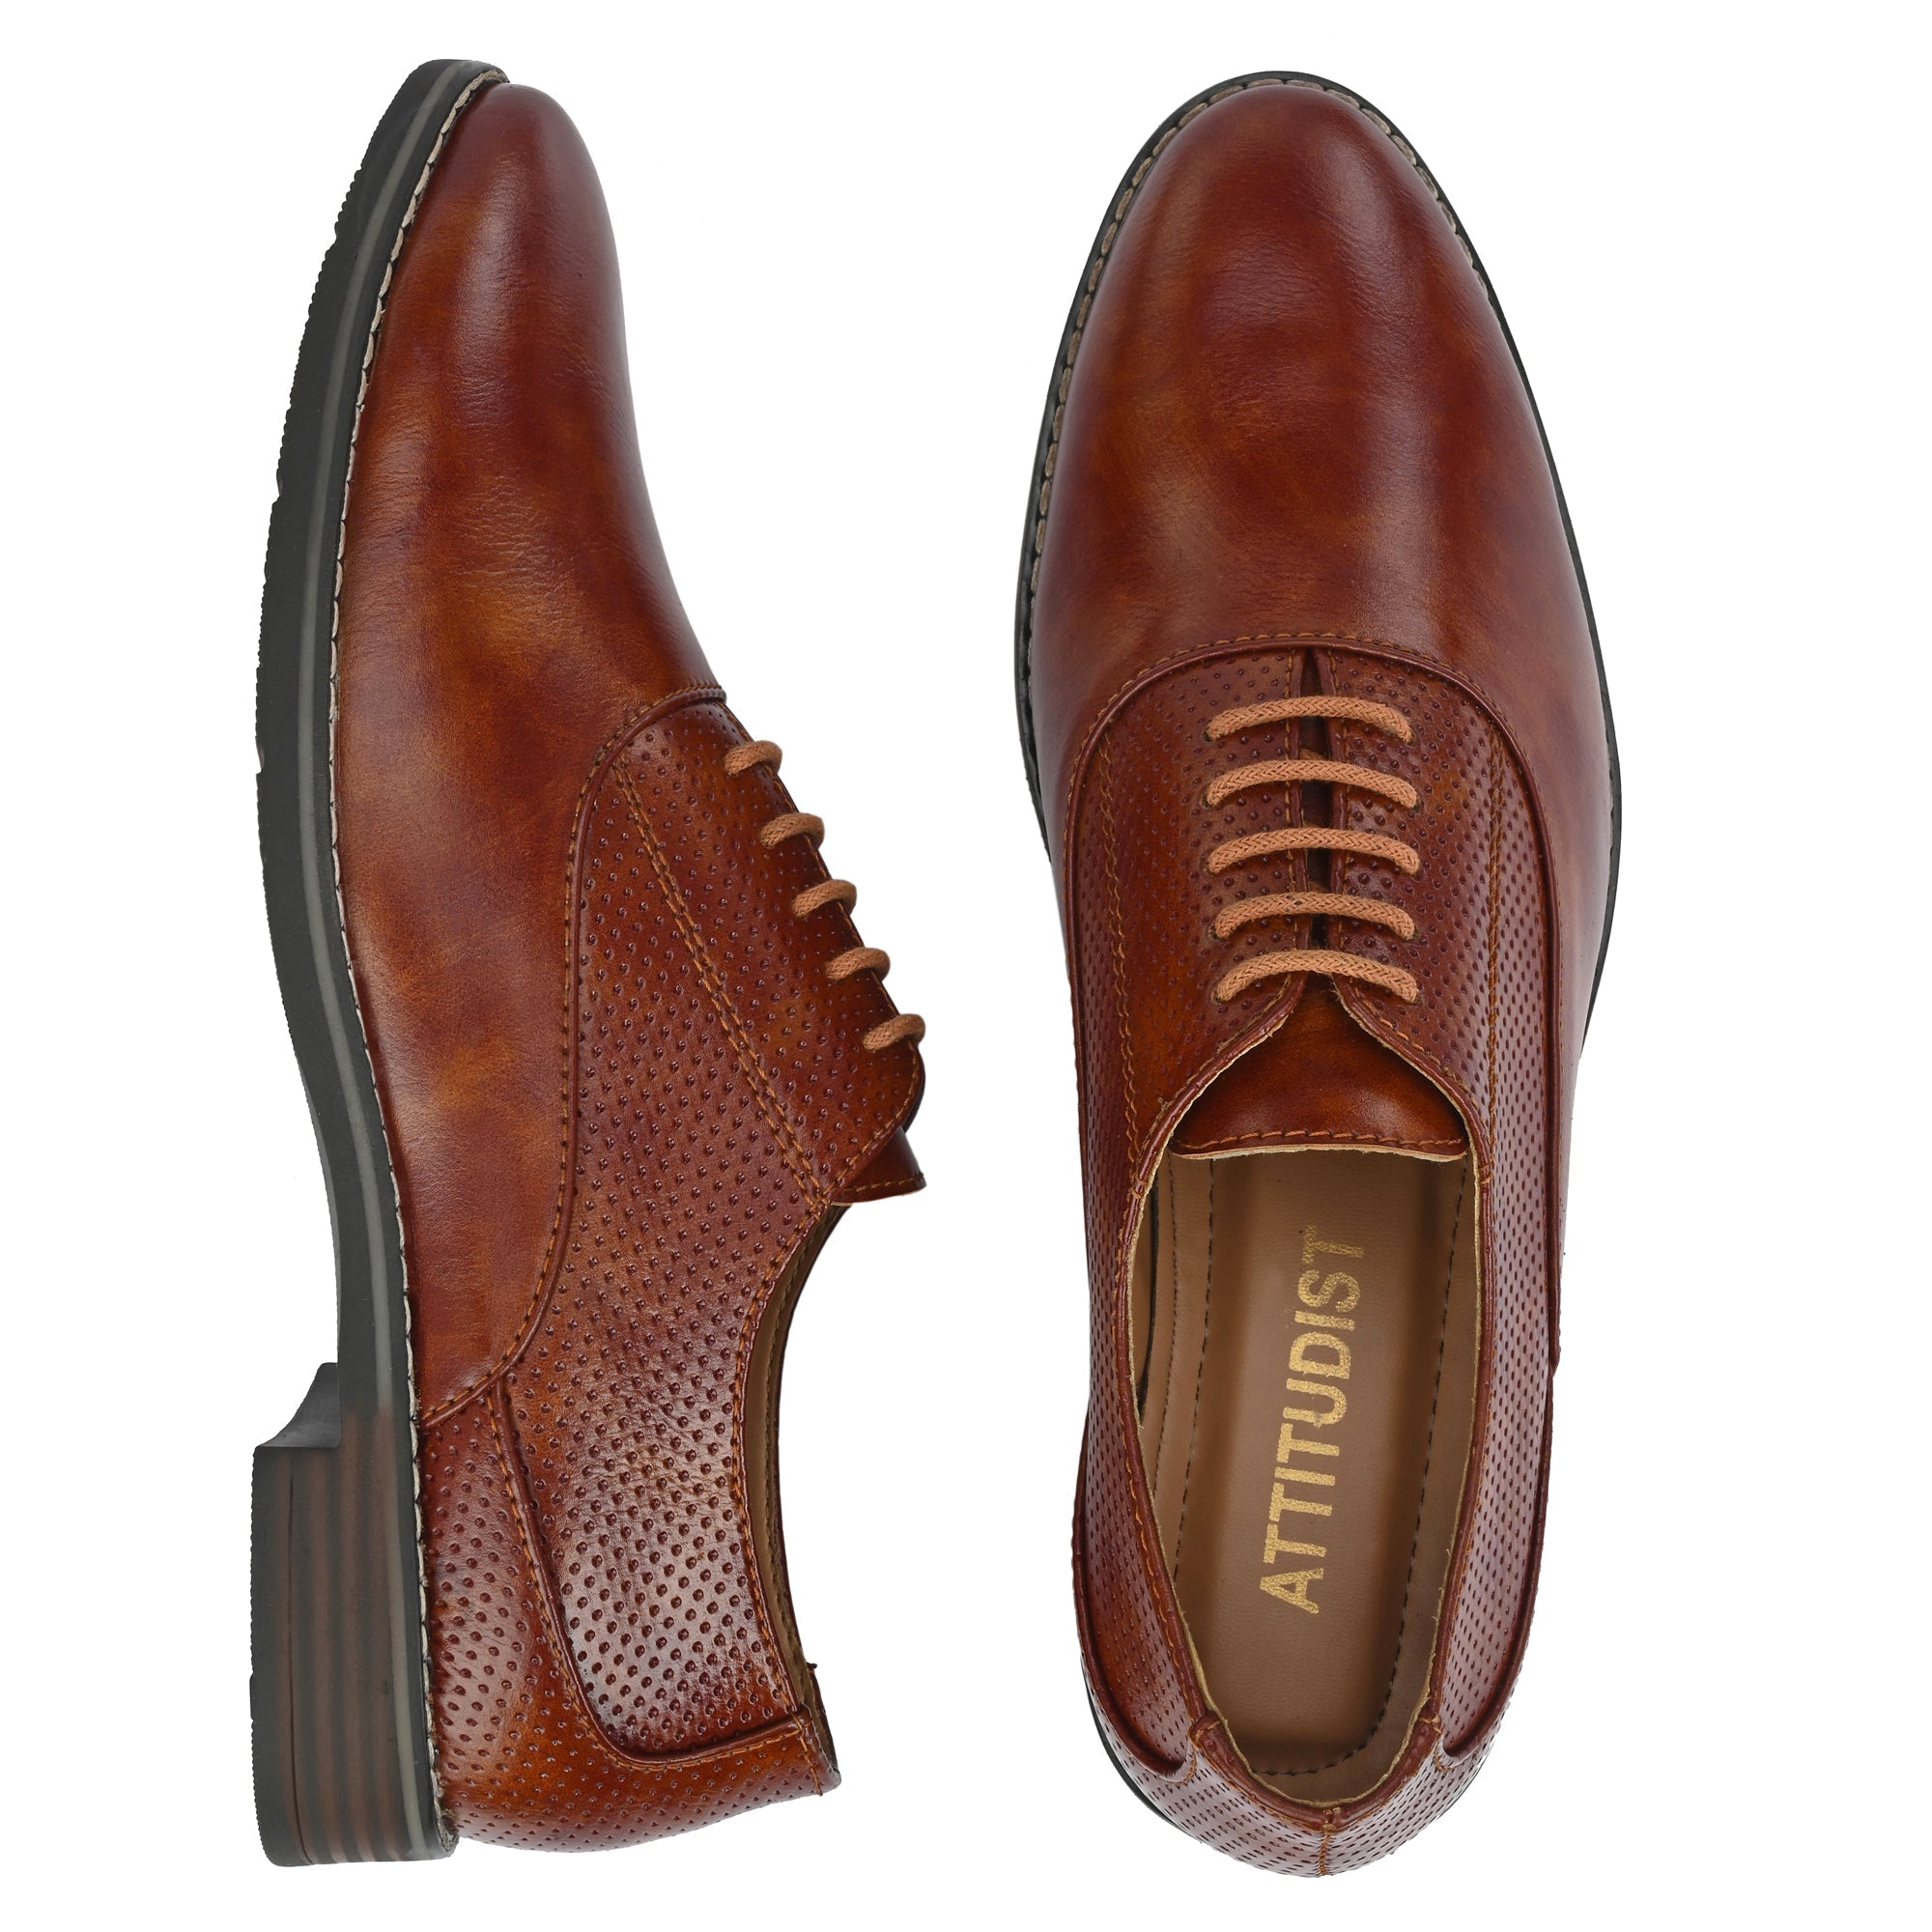 tan-formal-lace-up-attitudist-shoes-for-men-sp7c